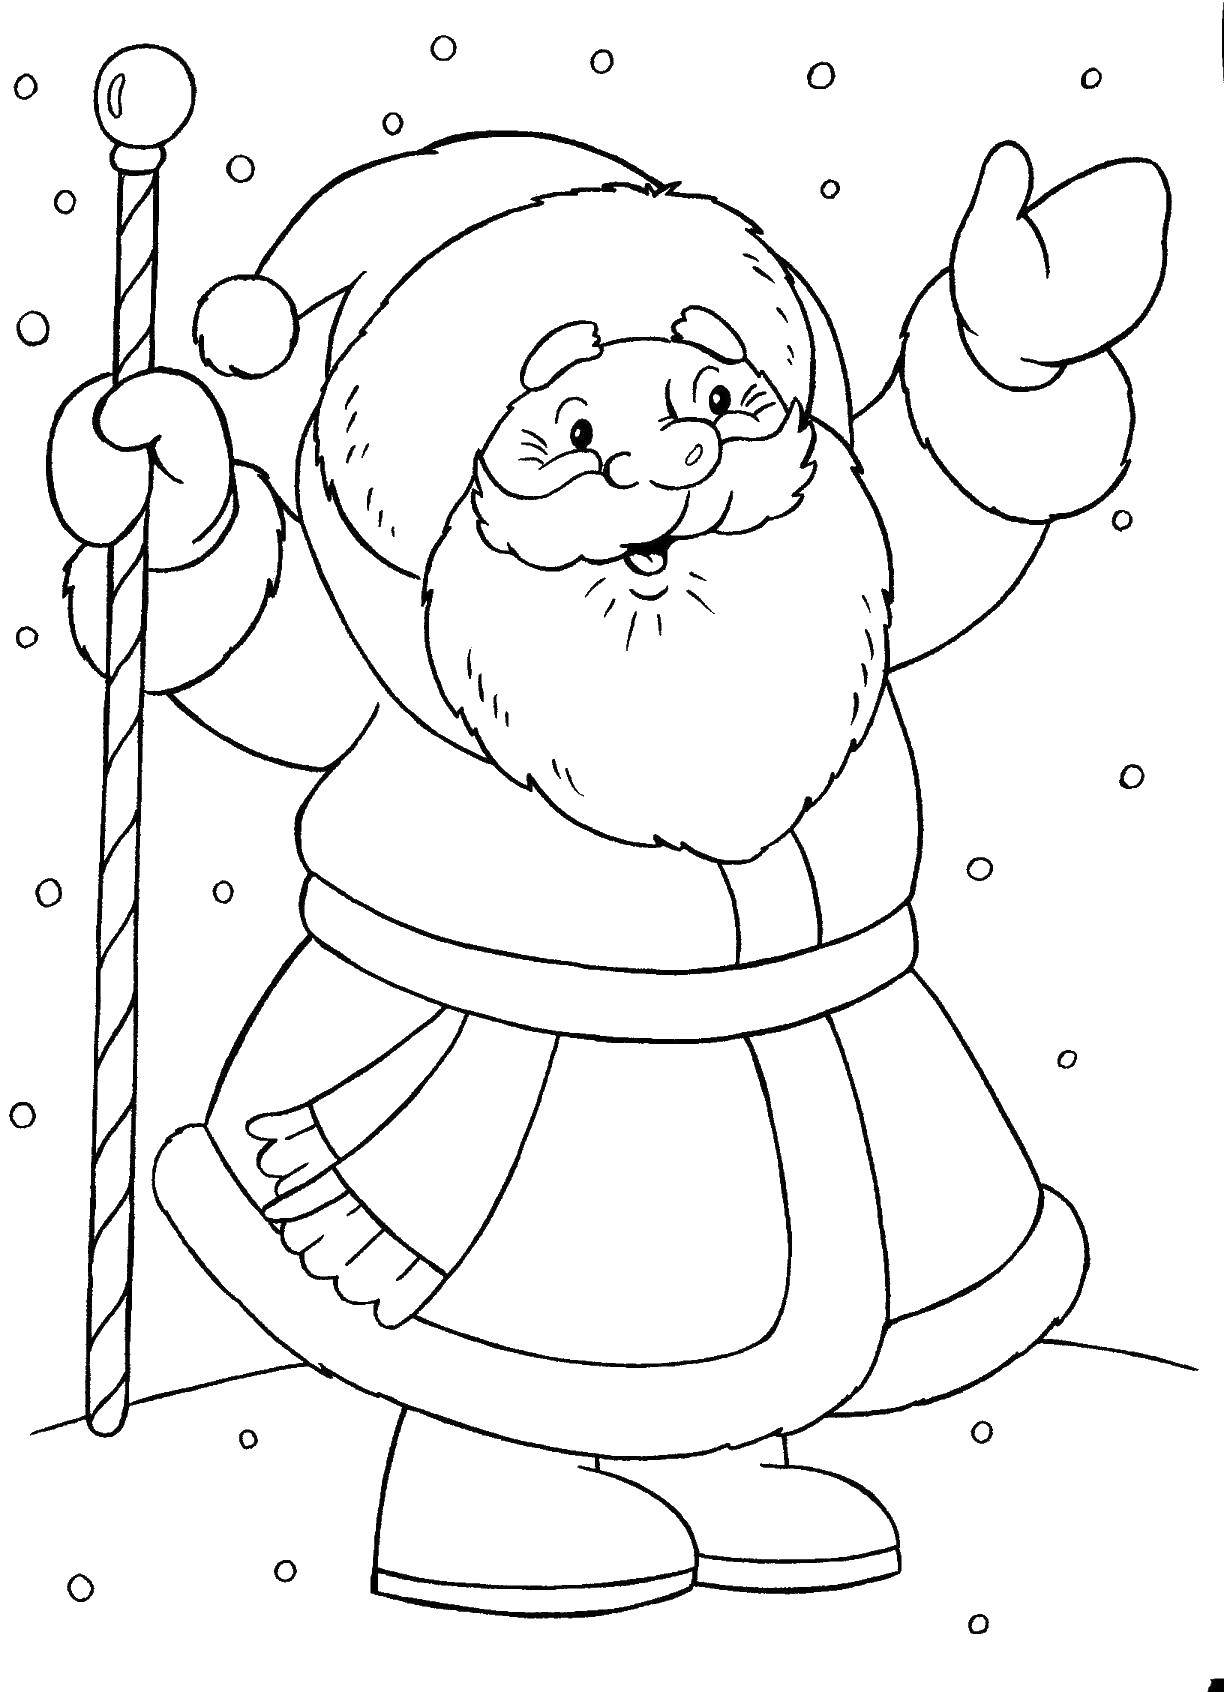 Название: Раскраска Веселый дед мороз с посохом. Категория: дед мороз. Теги: Новый Год, Дед Мороз.